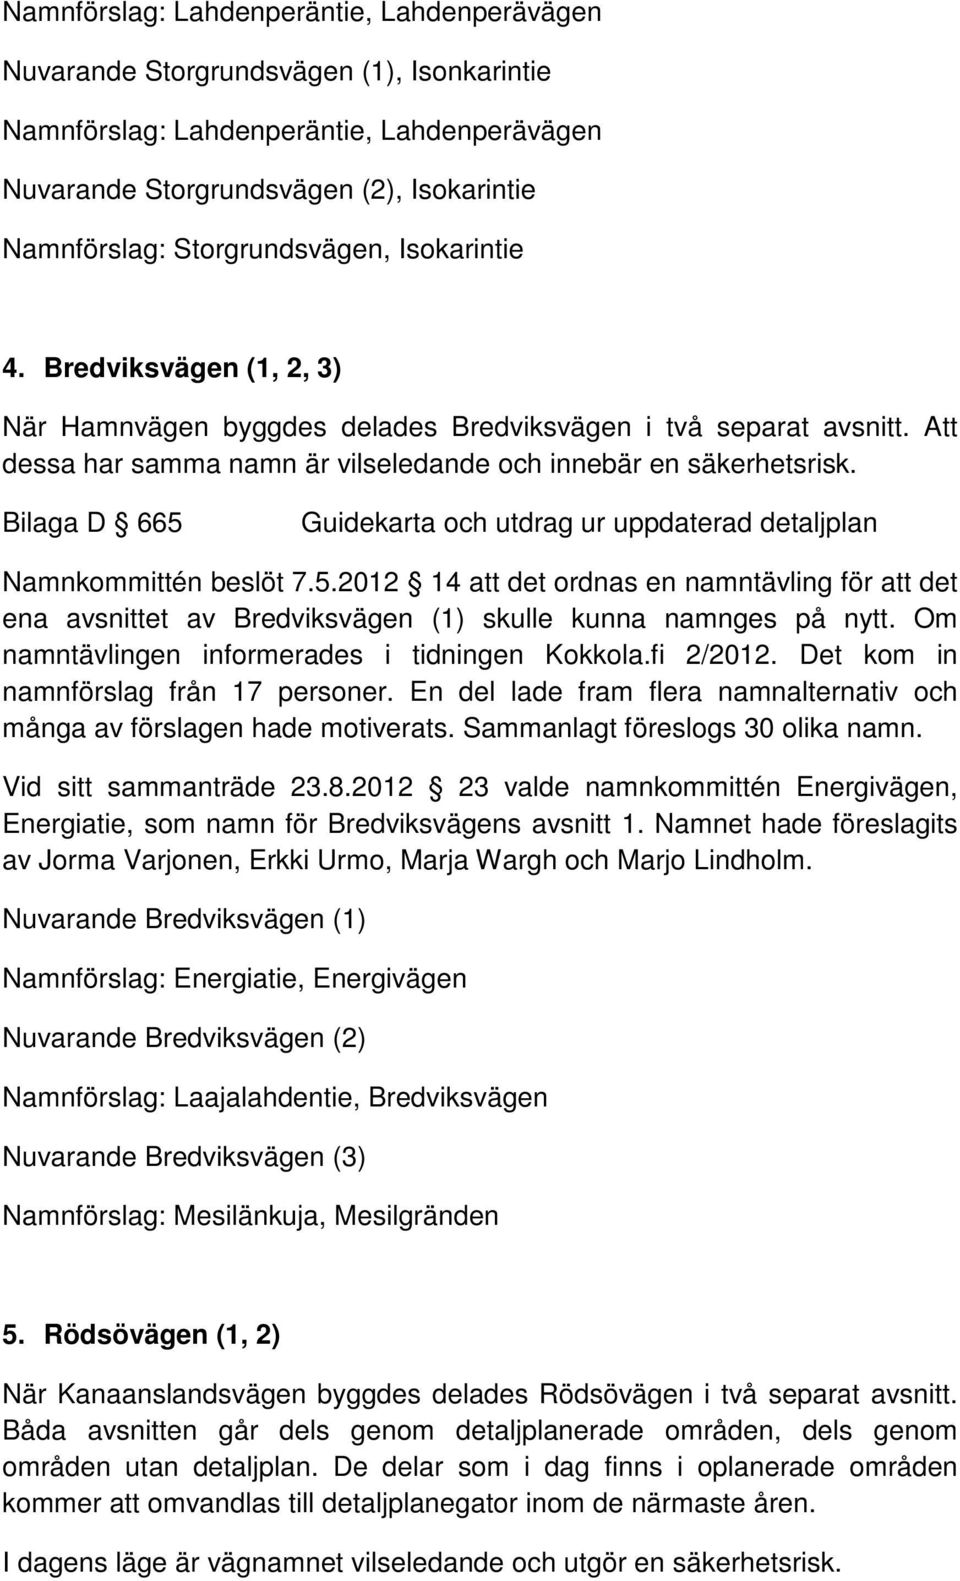 Bilaga D 665 Namnkommittén beslöt 7.5.2012 14 att det ordnas en namntävling för att det ena avsnittet av Bredviksvägen (1) skulle kunna namnges på nytt.